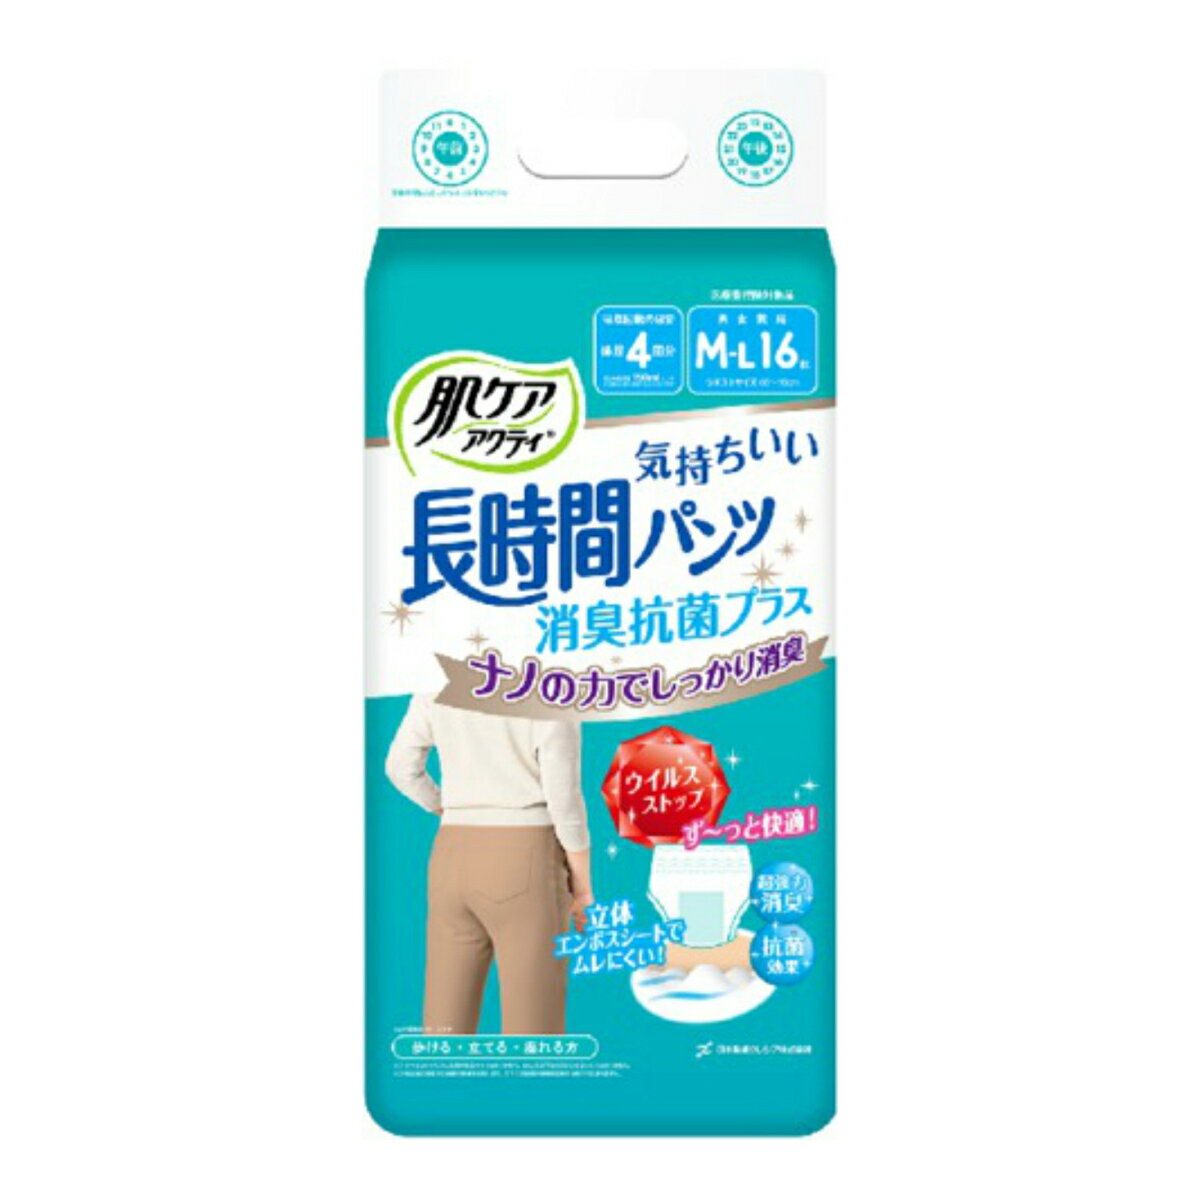 【令和・早い者勝ちセール】日本製紙 クレシア 肌ケア アクティ 長時間 パンツ 消臭 抗菌 プラス M-L 16枚